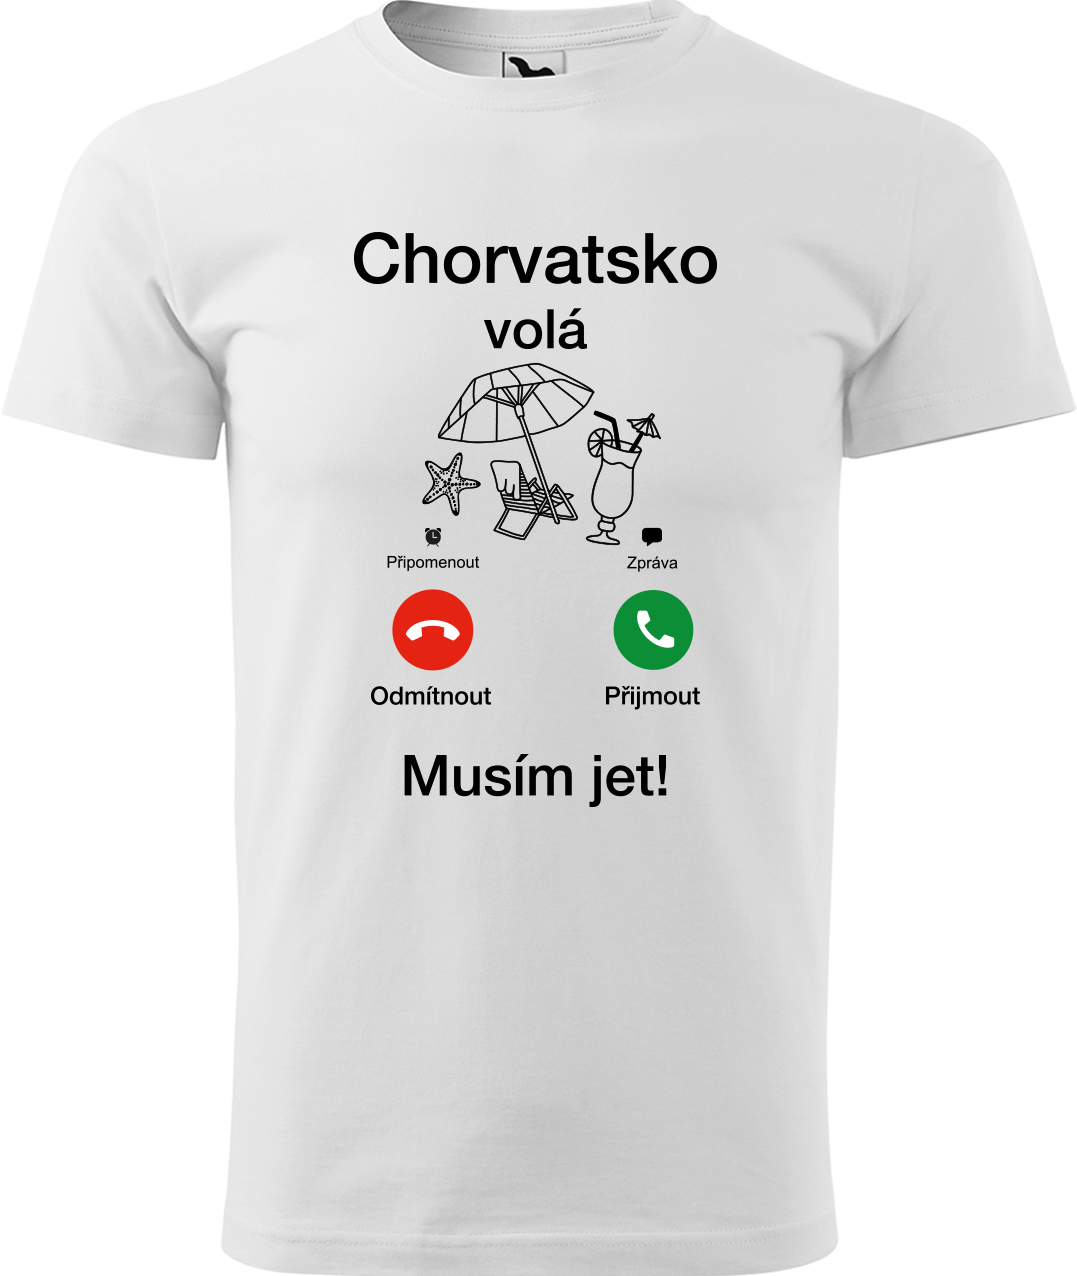 Pánské cestovatelské tričko - Chorvatsko volá - musím jet! Velikost: S, Barva: Bílá (00), Střih: pánský